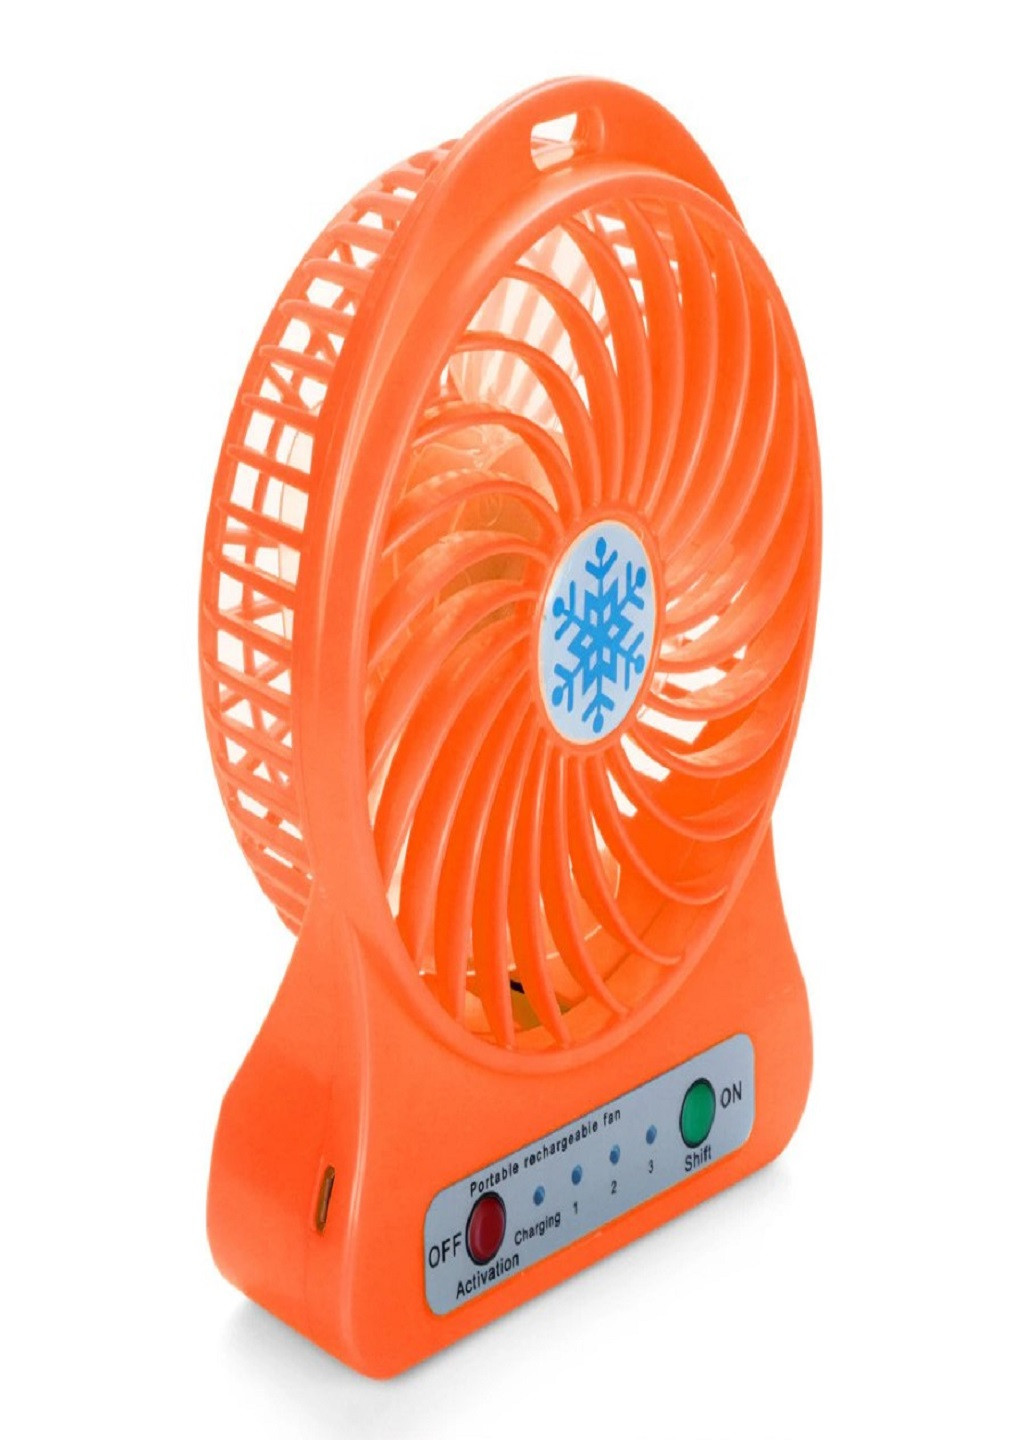 Универсальный портативный ручной вентилятор с аккумулятором настольный Mini Fan Оранжевый VTech (258925260)